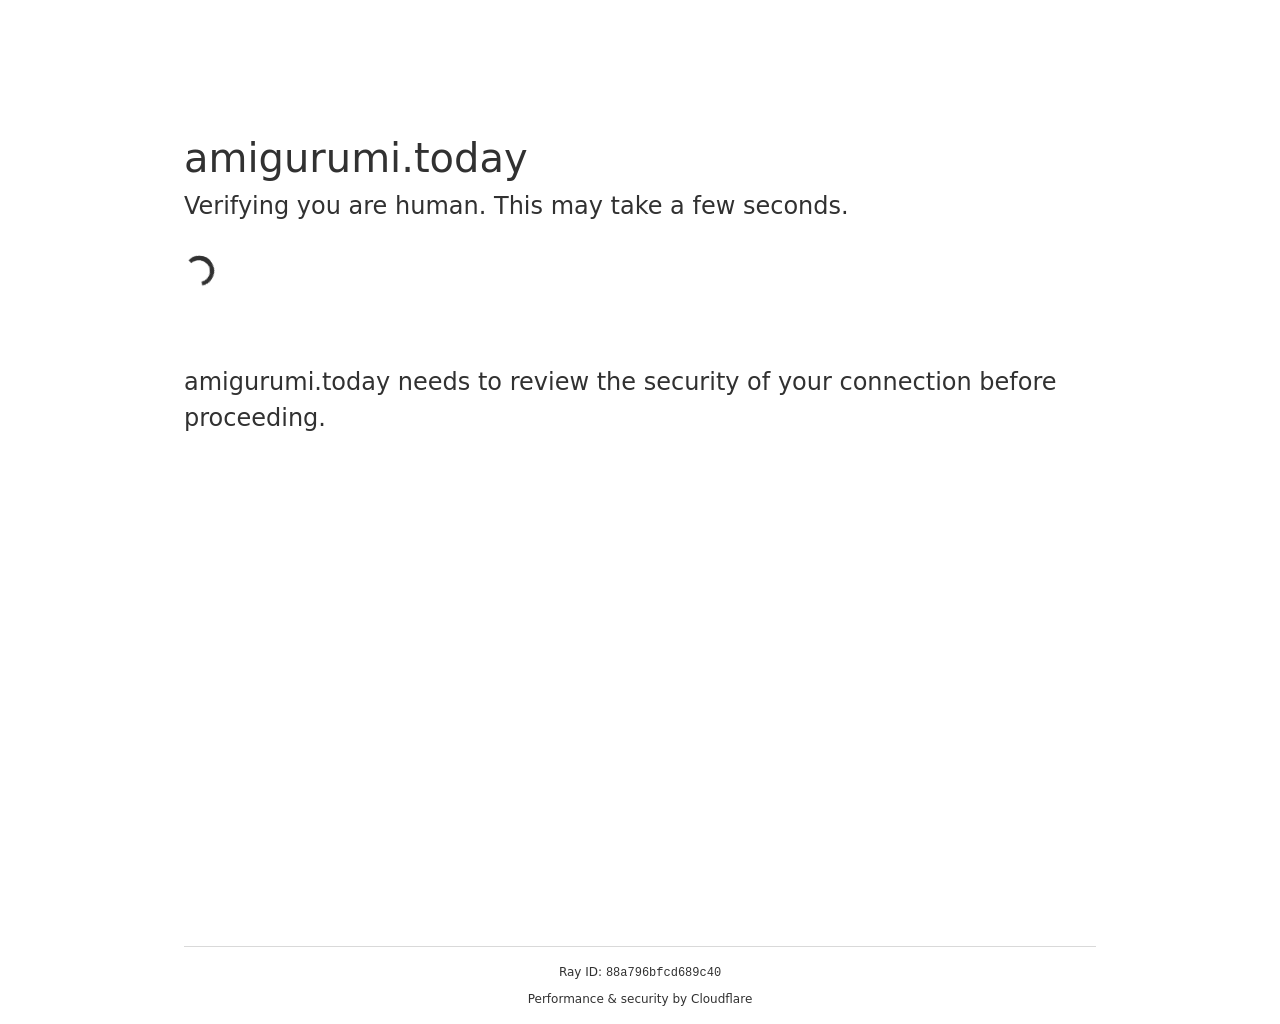 amigurumi.today